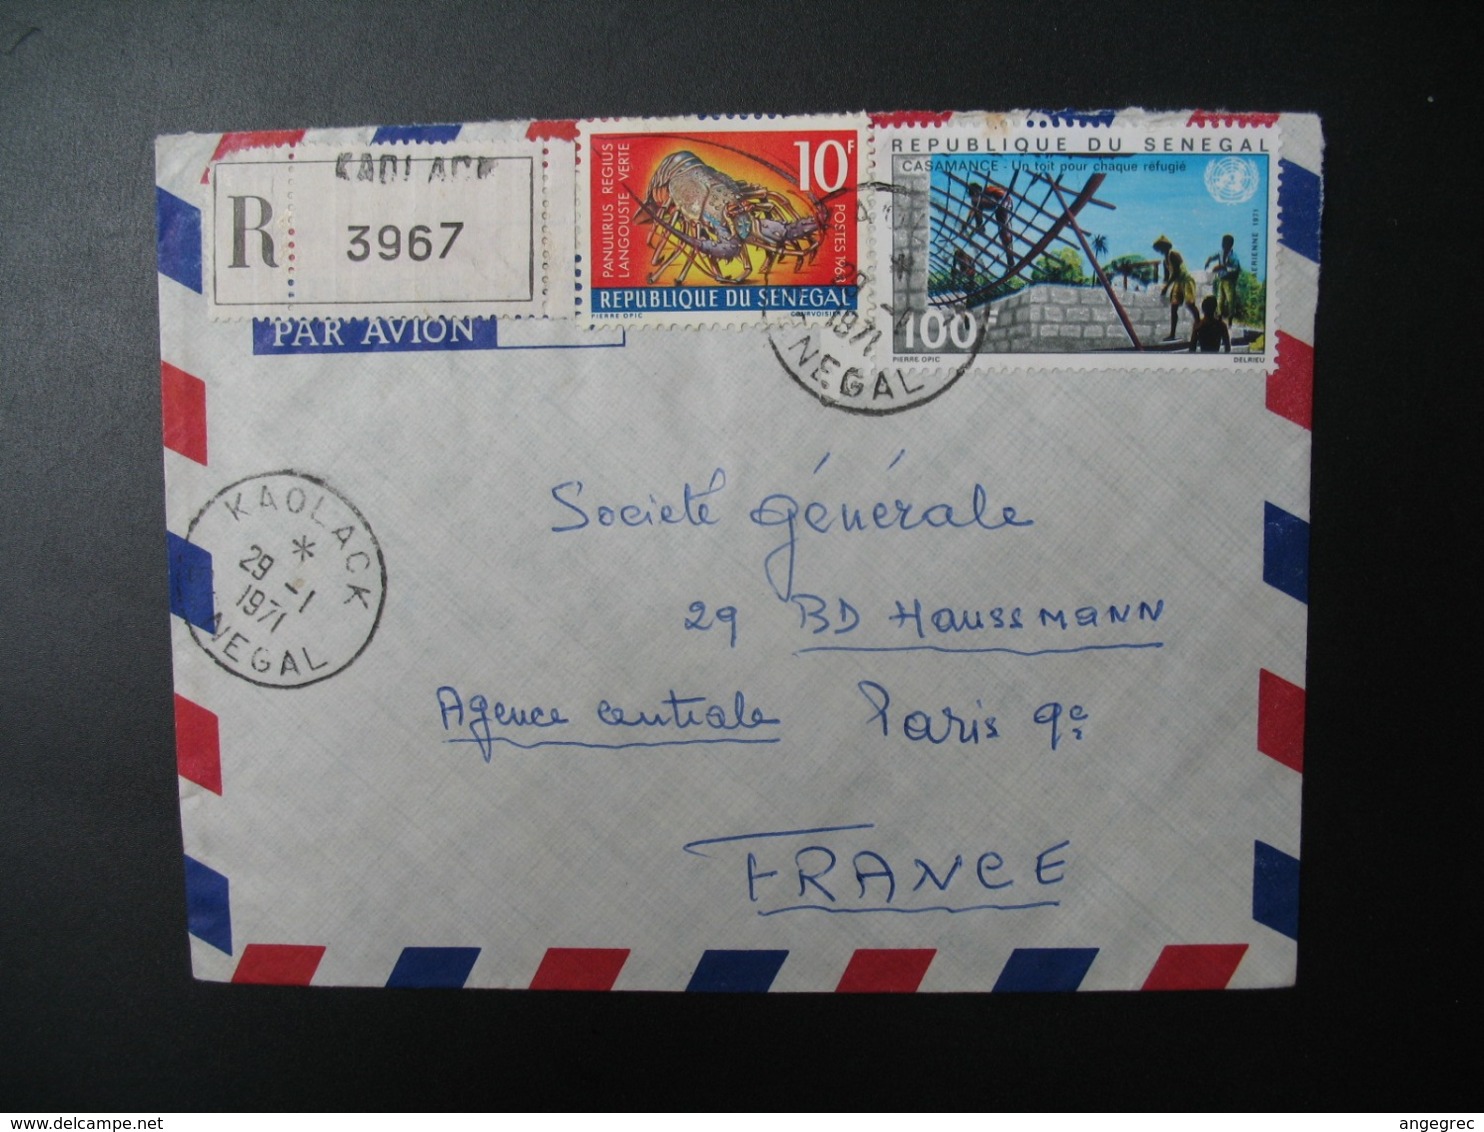 Sénégal  Lettre Recommandée N° 3967 - 1971  Agence Kaolack  Pour La Sté Générale En France   Bd Haussmann   Paris - Sénégal (1960-...)